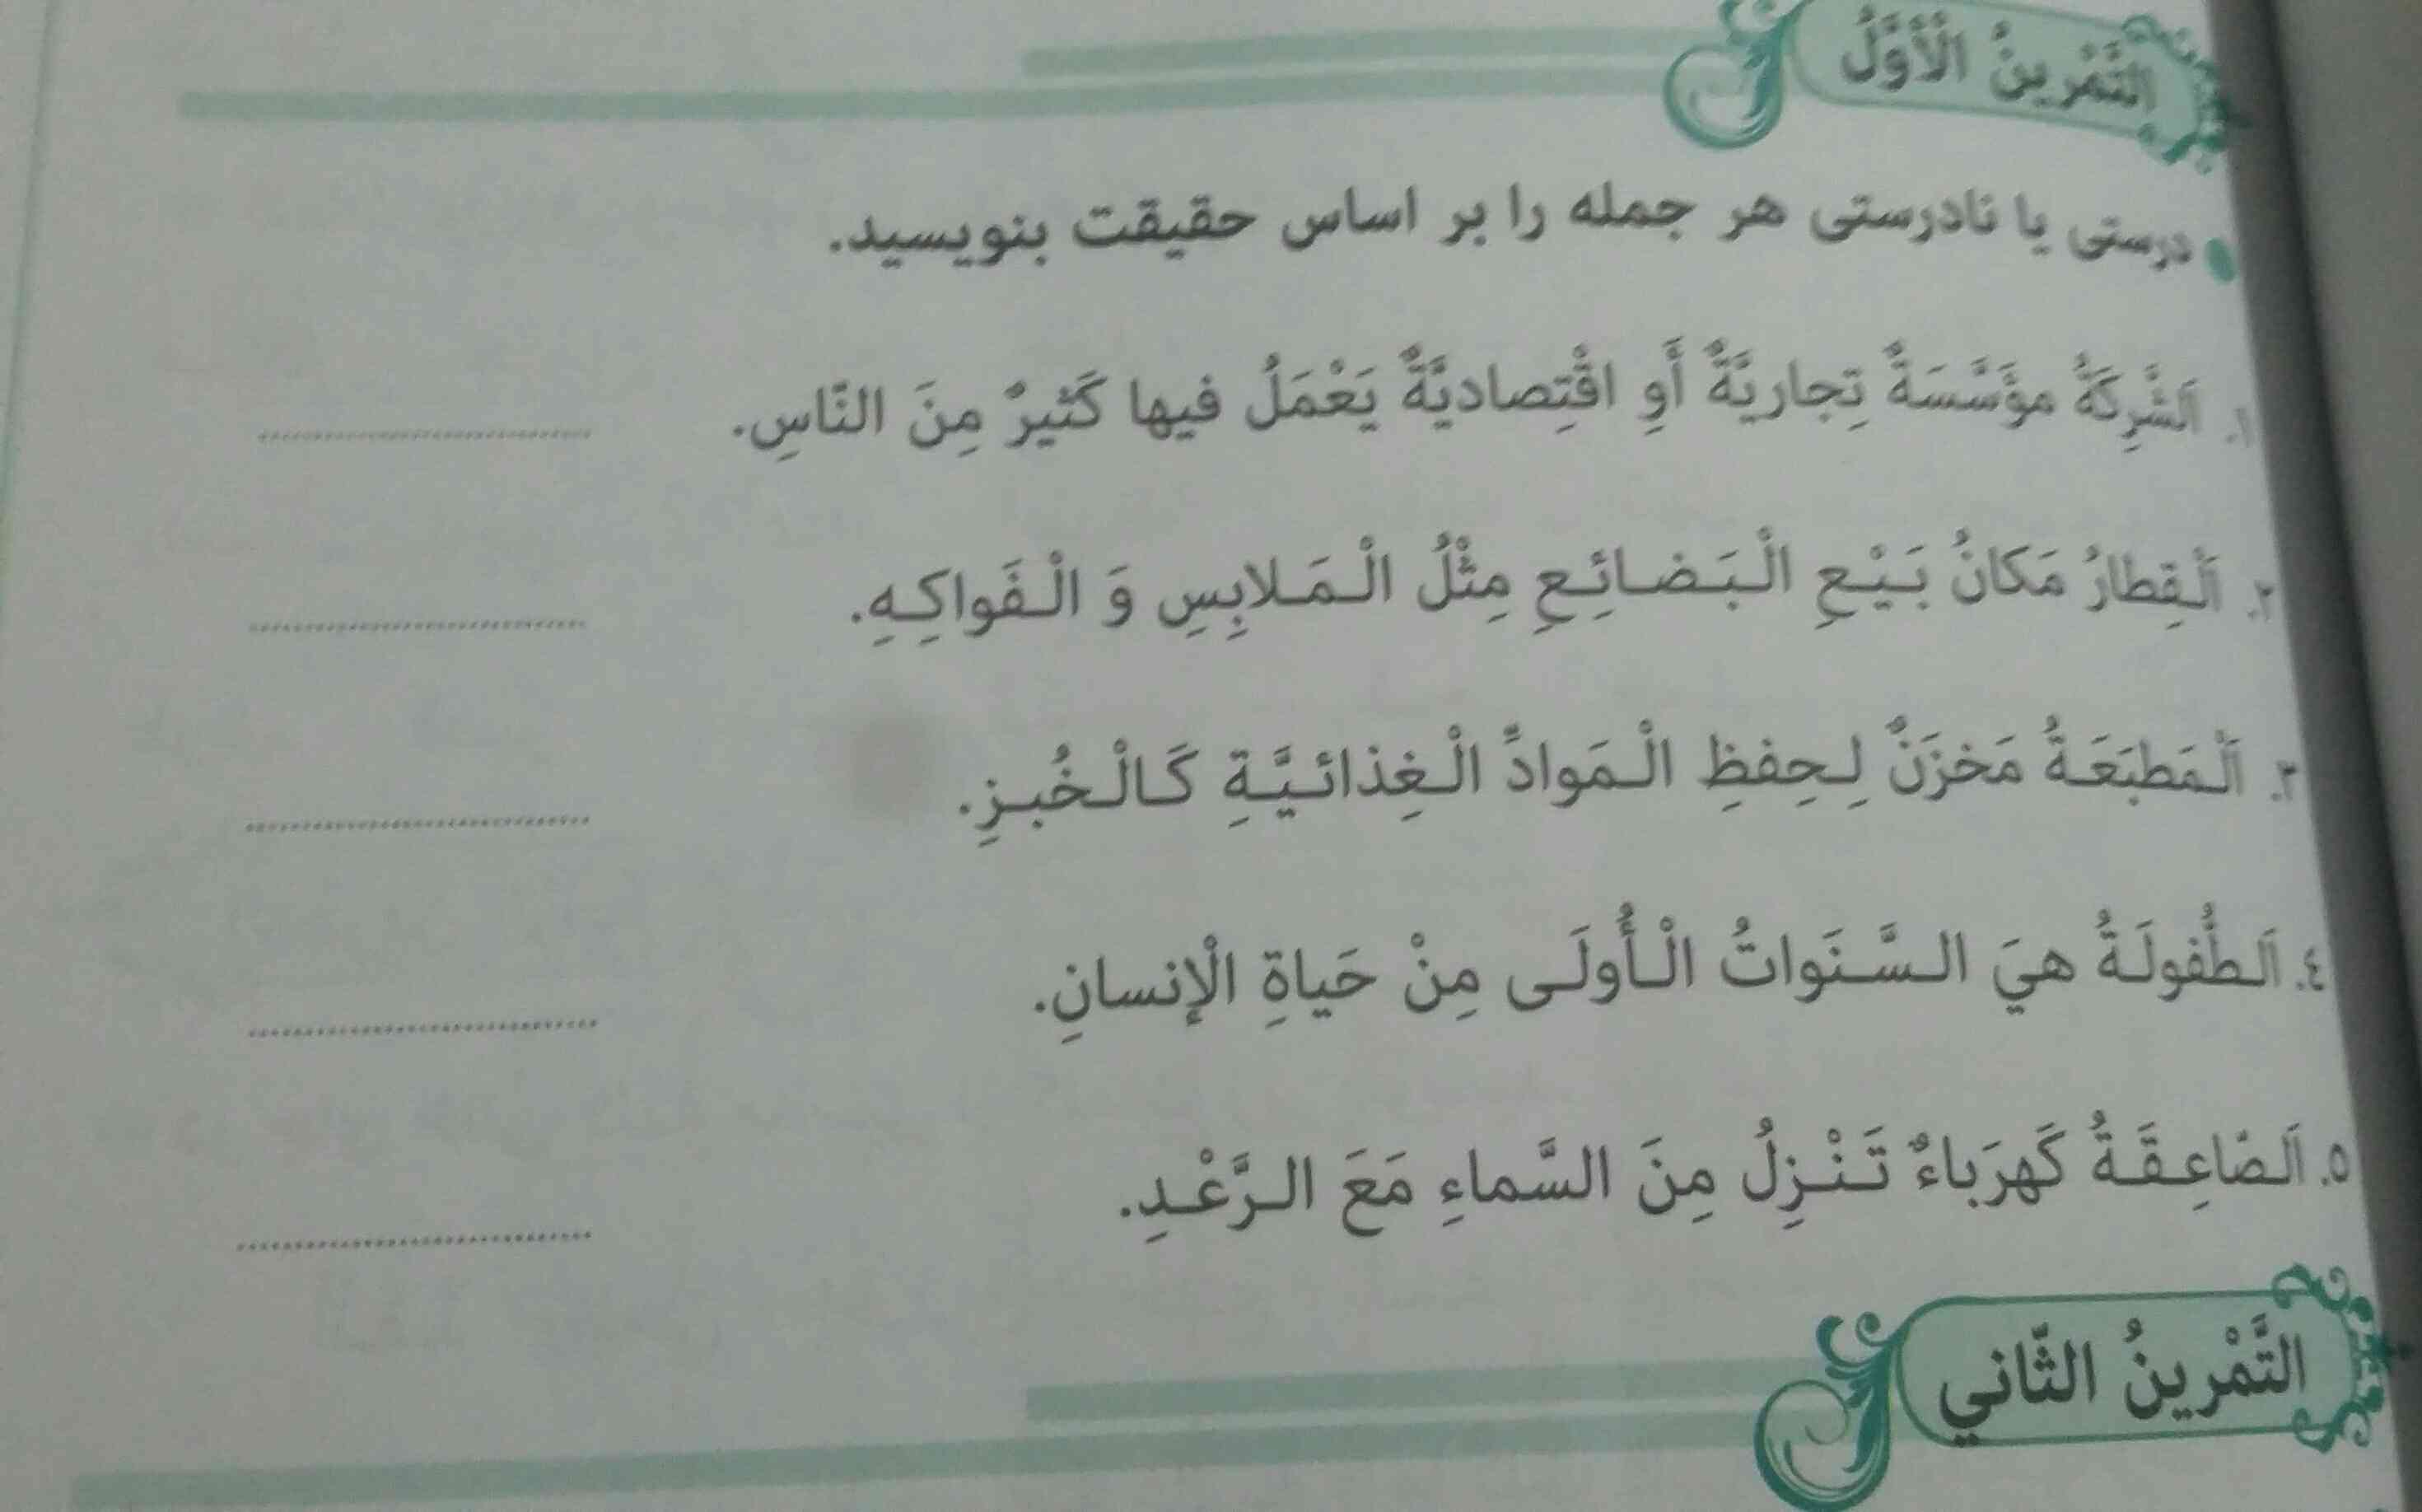 جواب تمرین اول عربی را برام بگید؟
